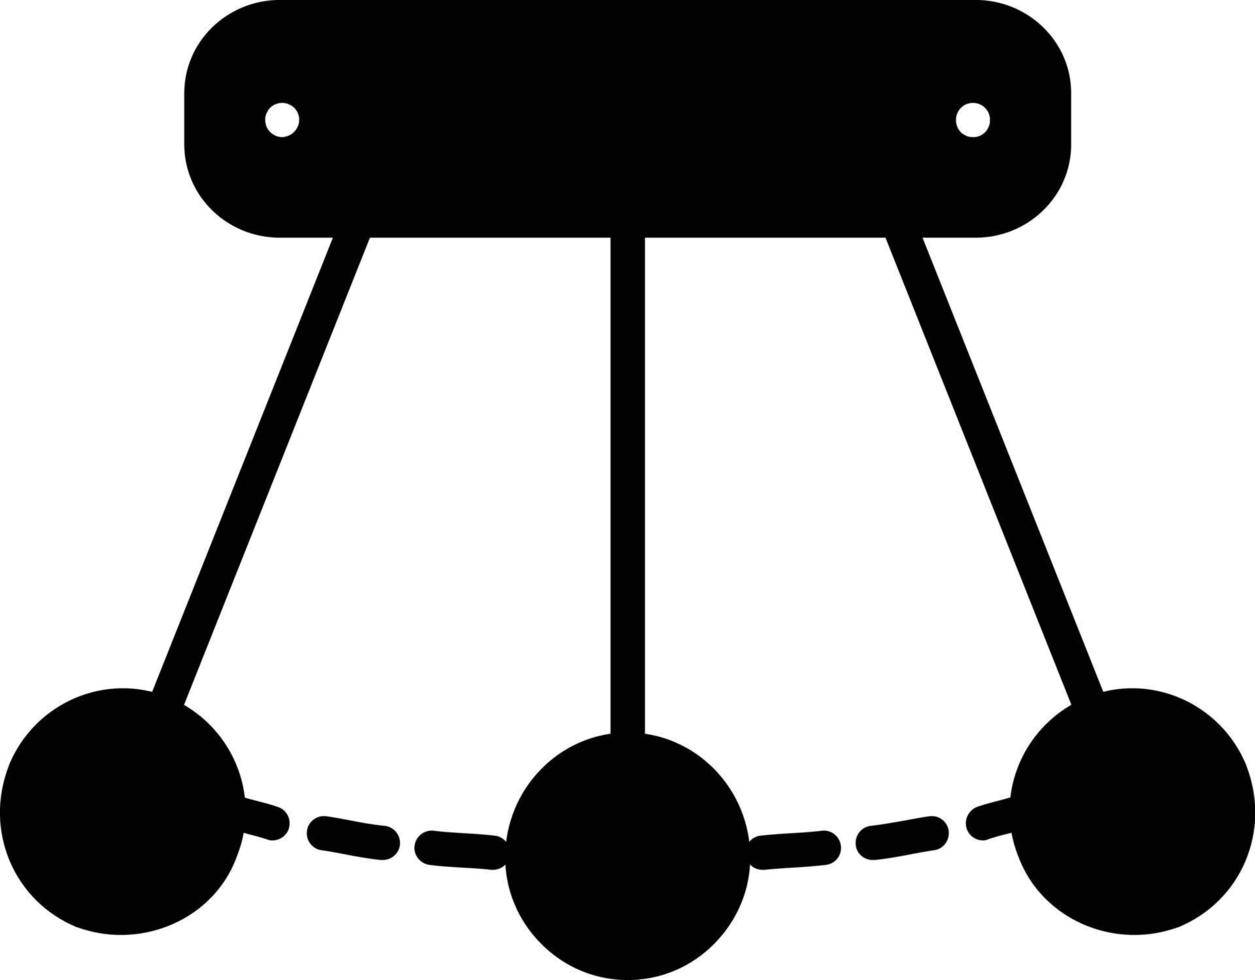 Science Glyph Icon vector